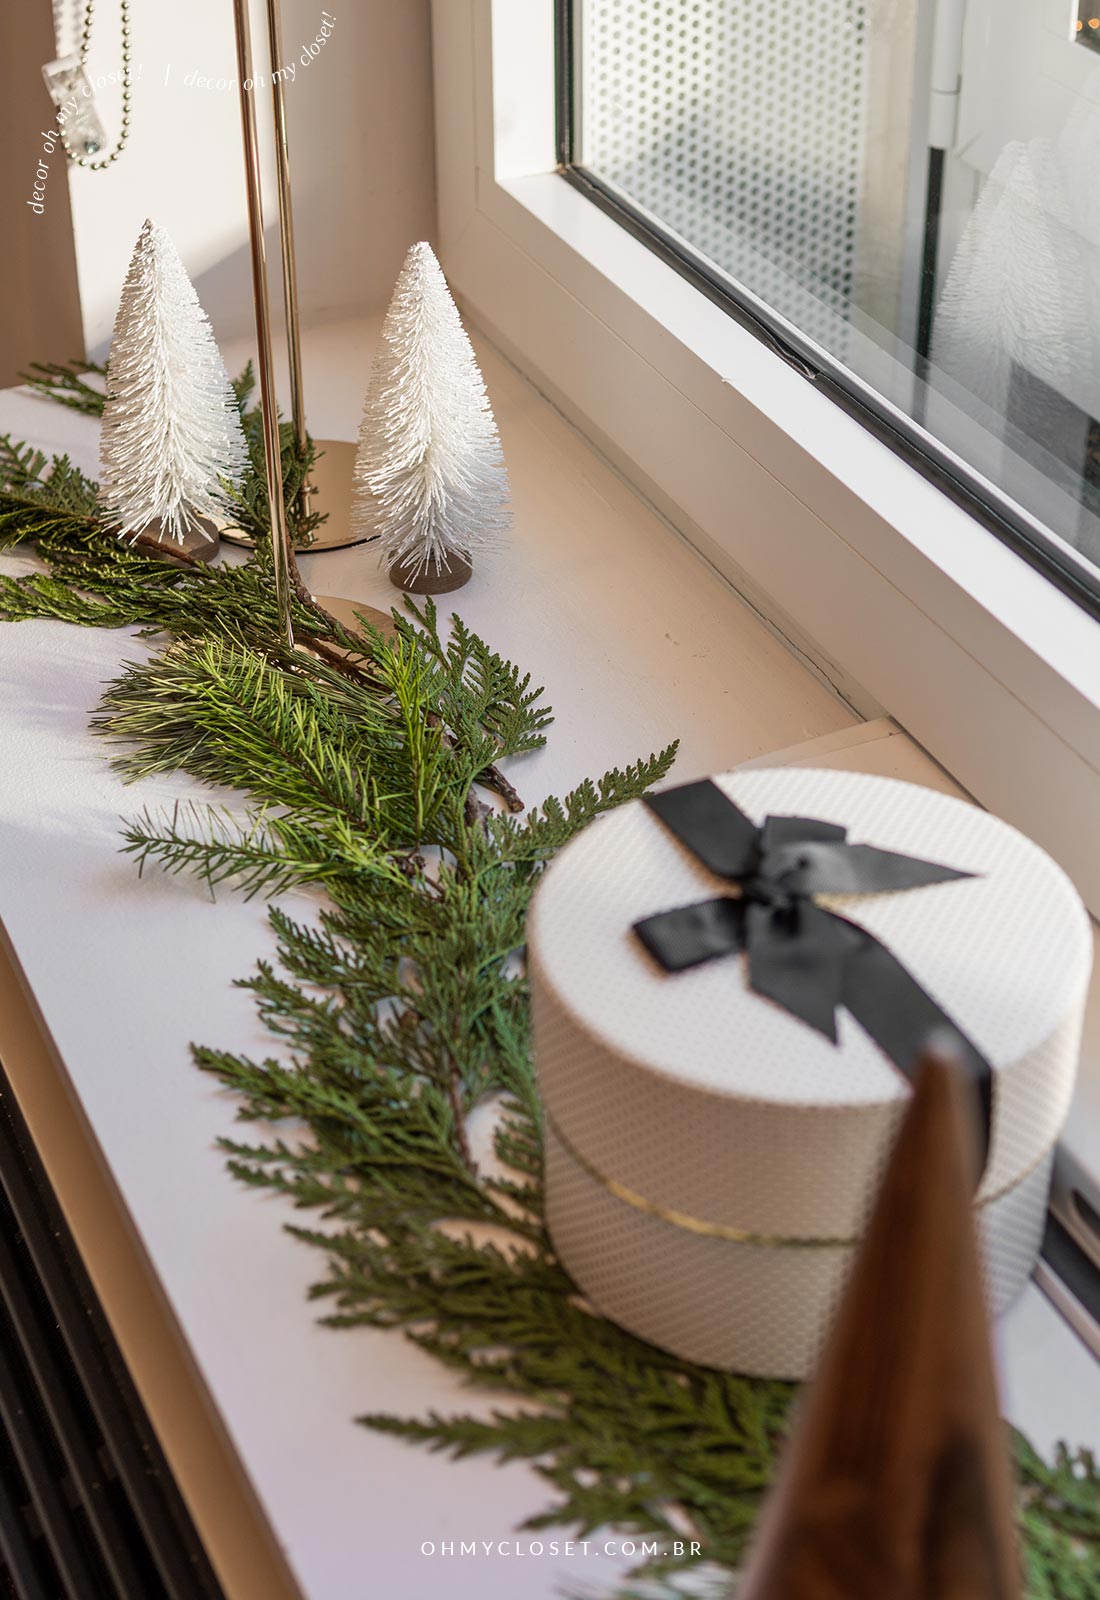 Decoração de natal com mini árvores brancas, caixa de presente, folhagem and castiçais.